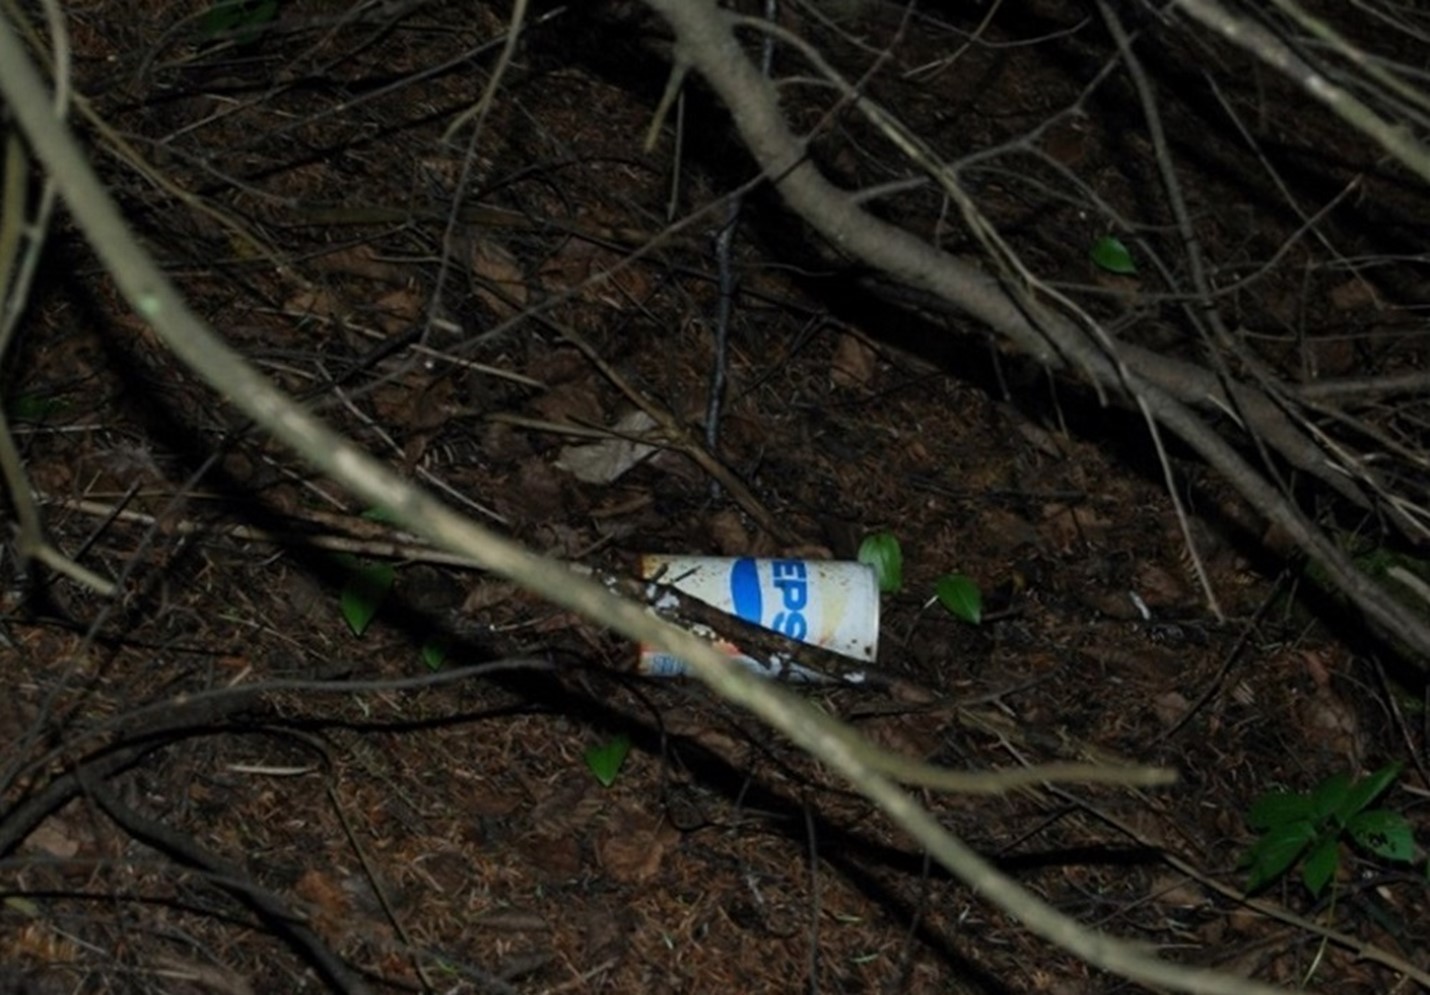 Une canette de boisson gazeuse Pepsi décolorée, datant probablement des années 1980, jetée et gisant derrière des branches d’arbre sur le sol forestier